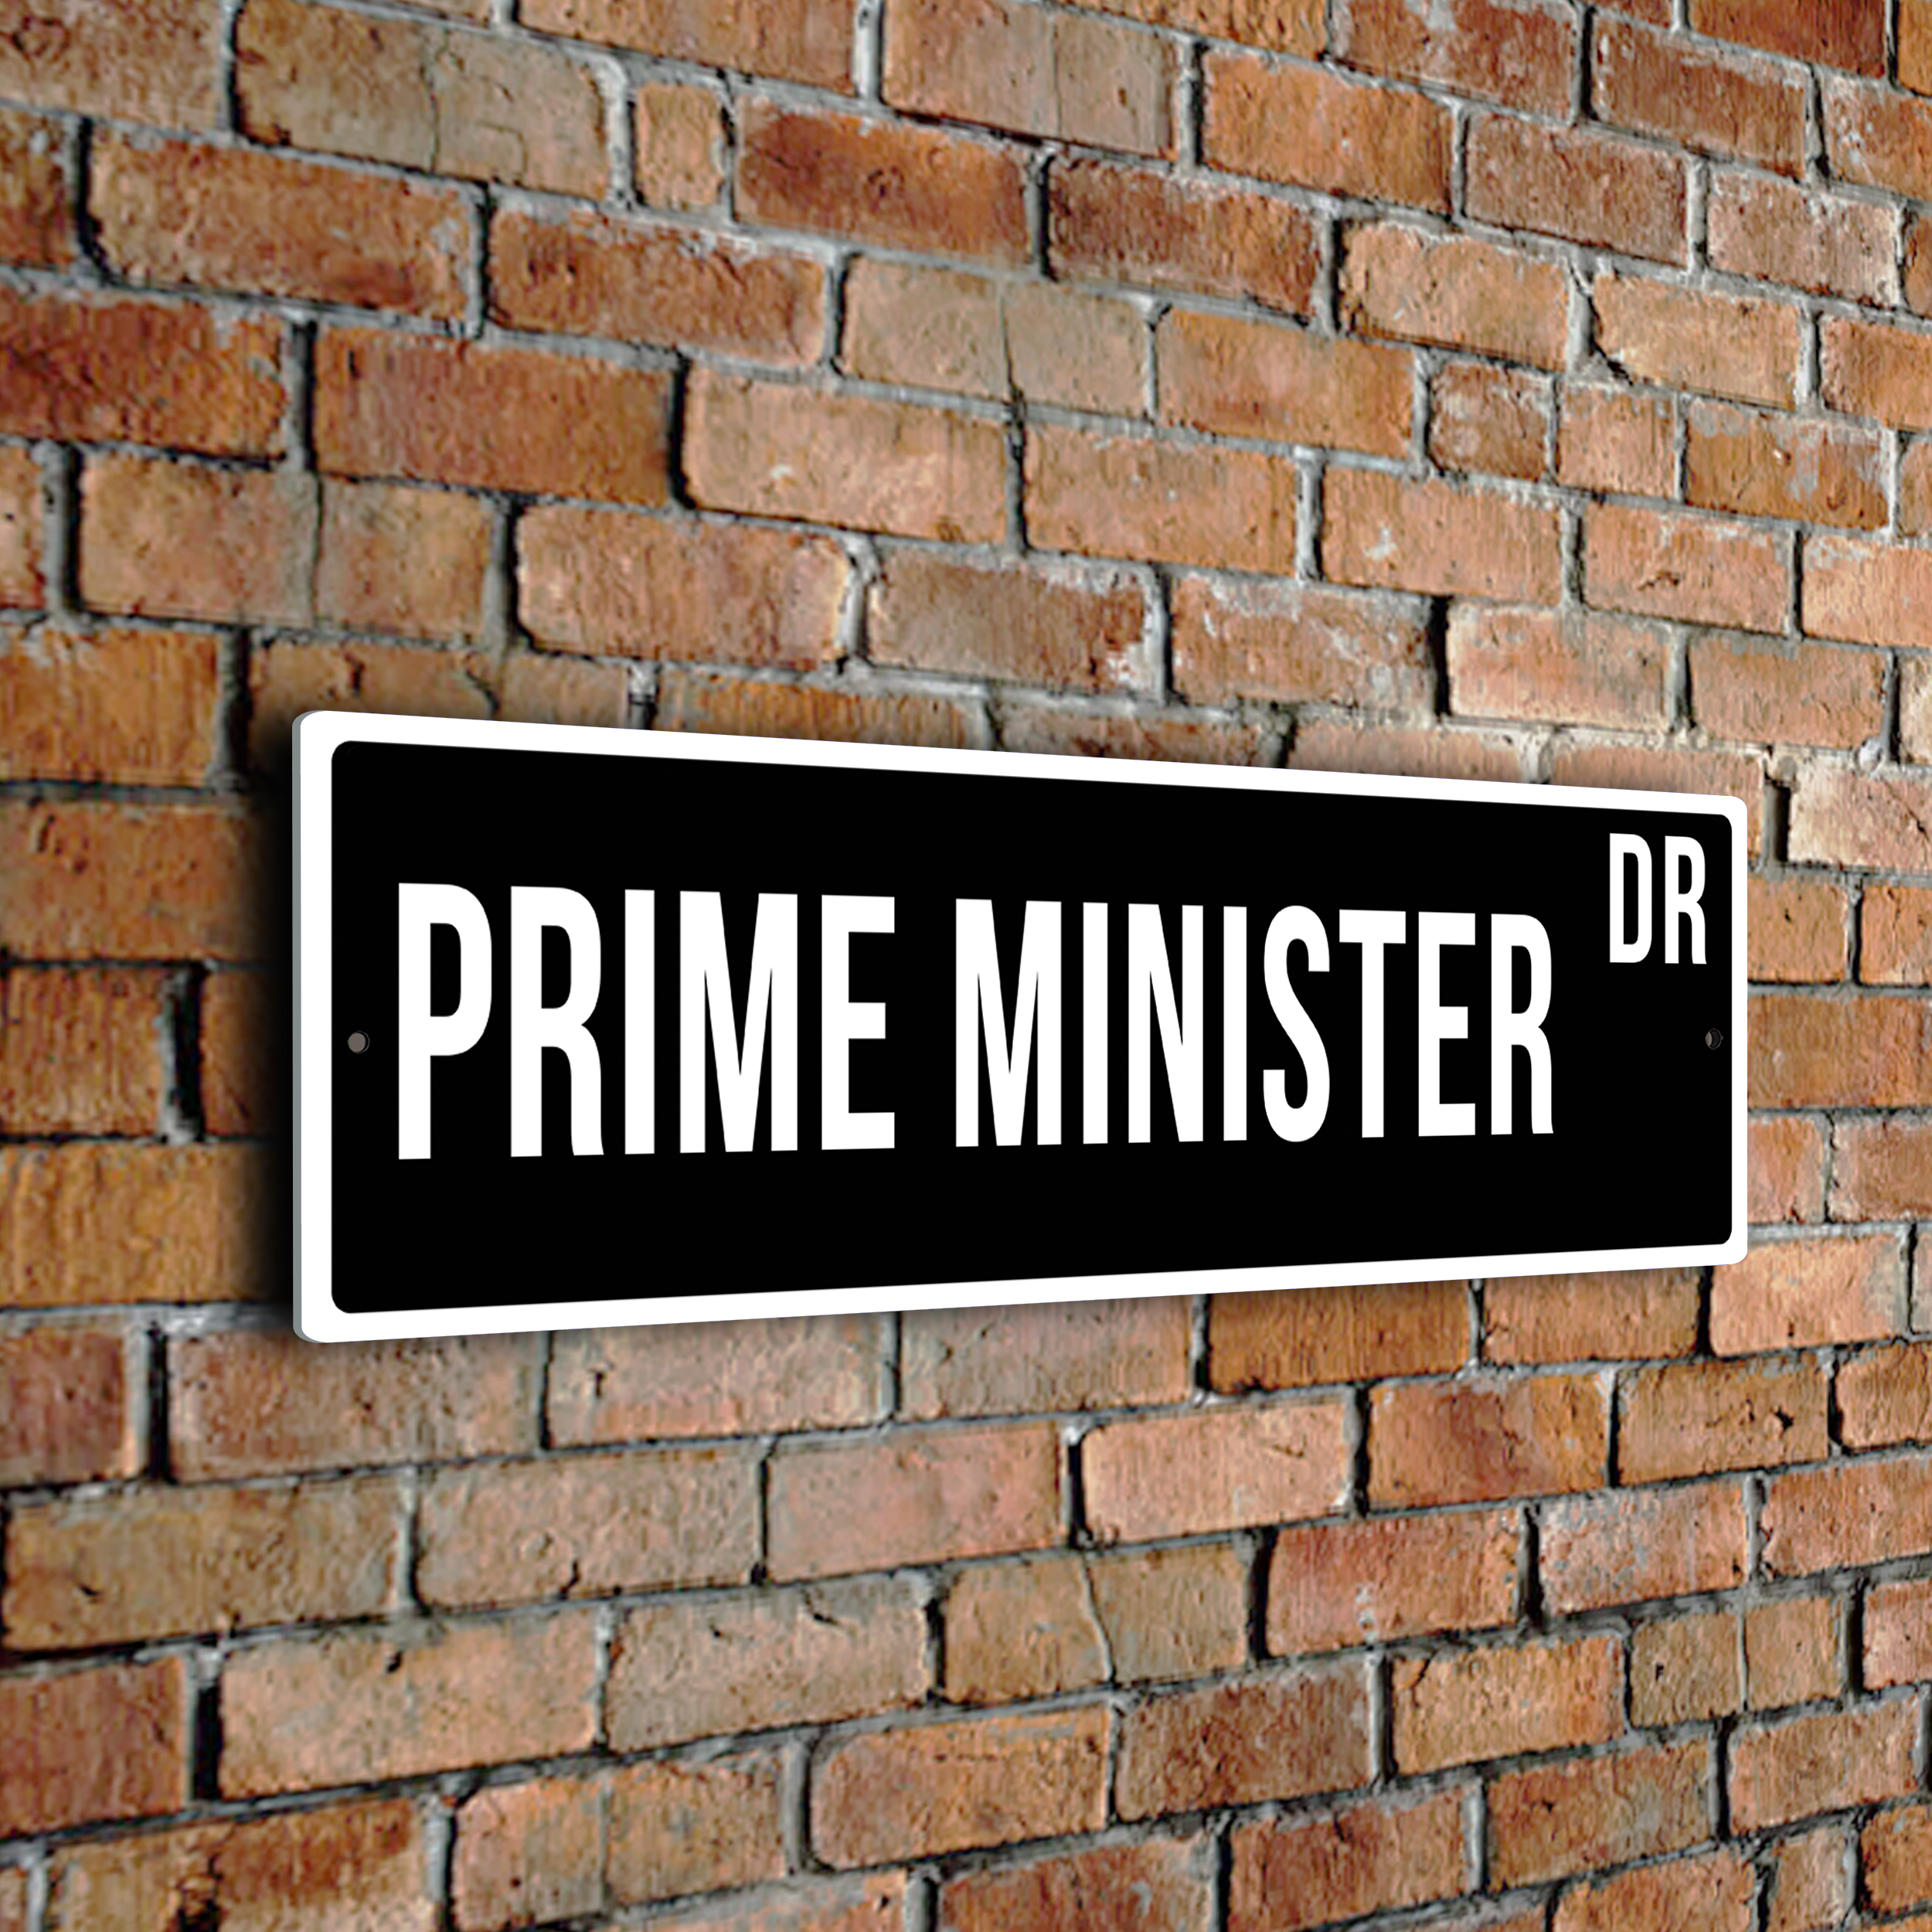 Prime Minister street sign